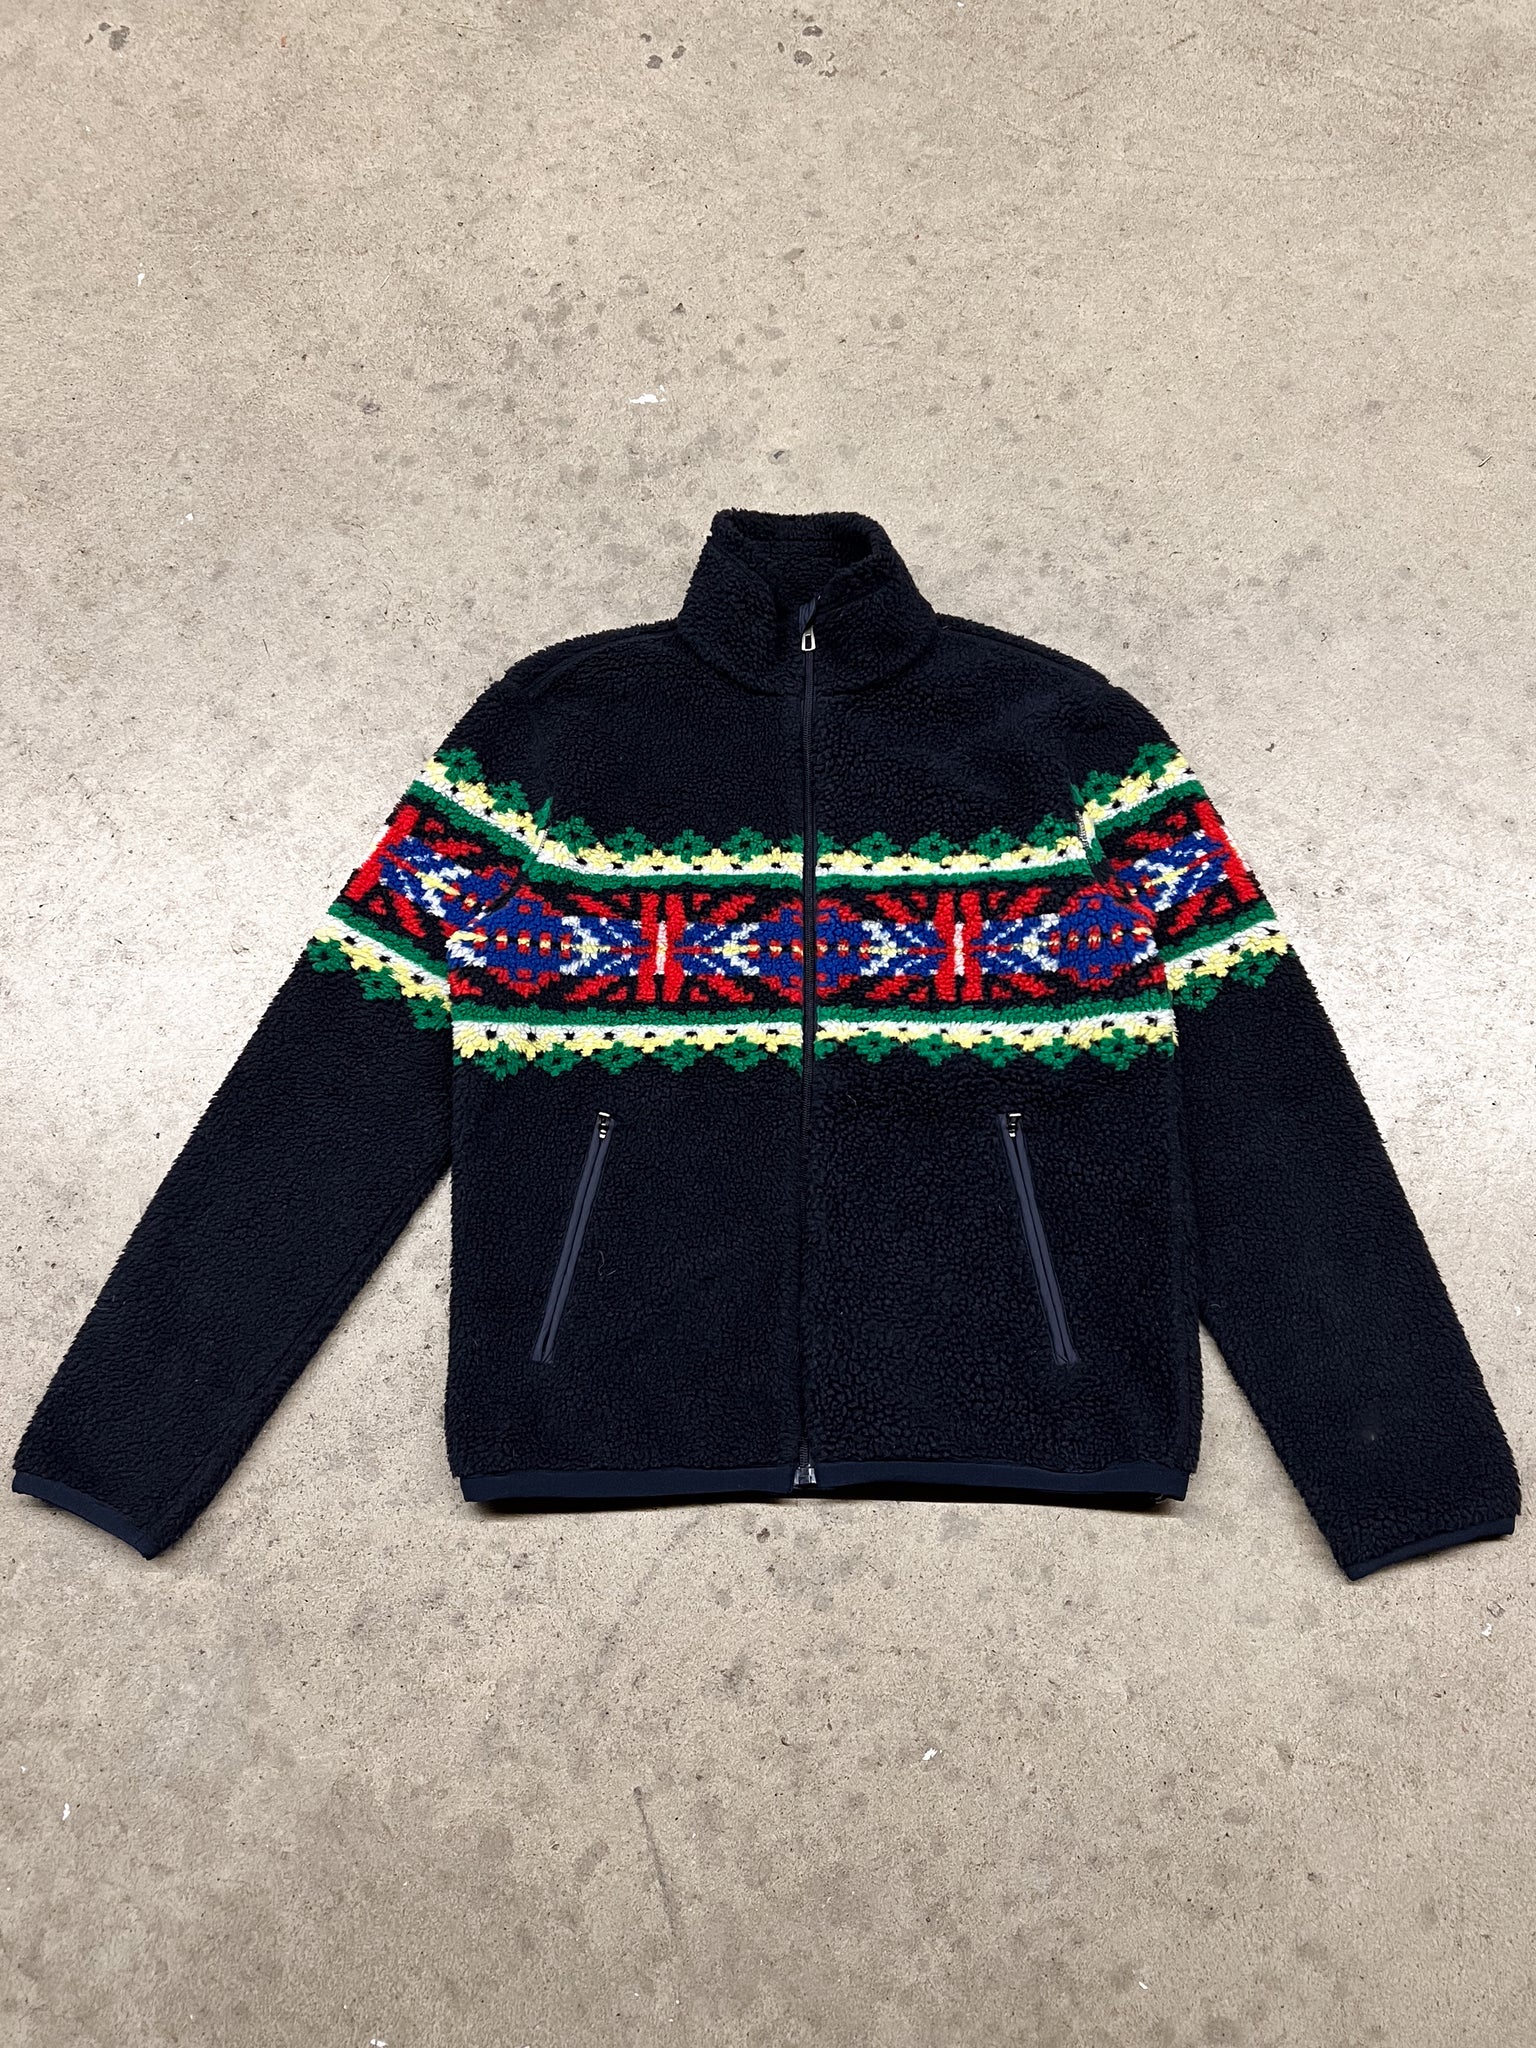 Ralph Lauren fleece jacket / small